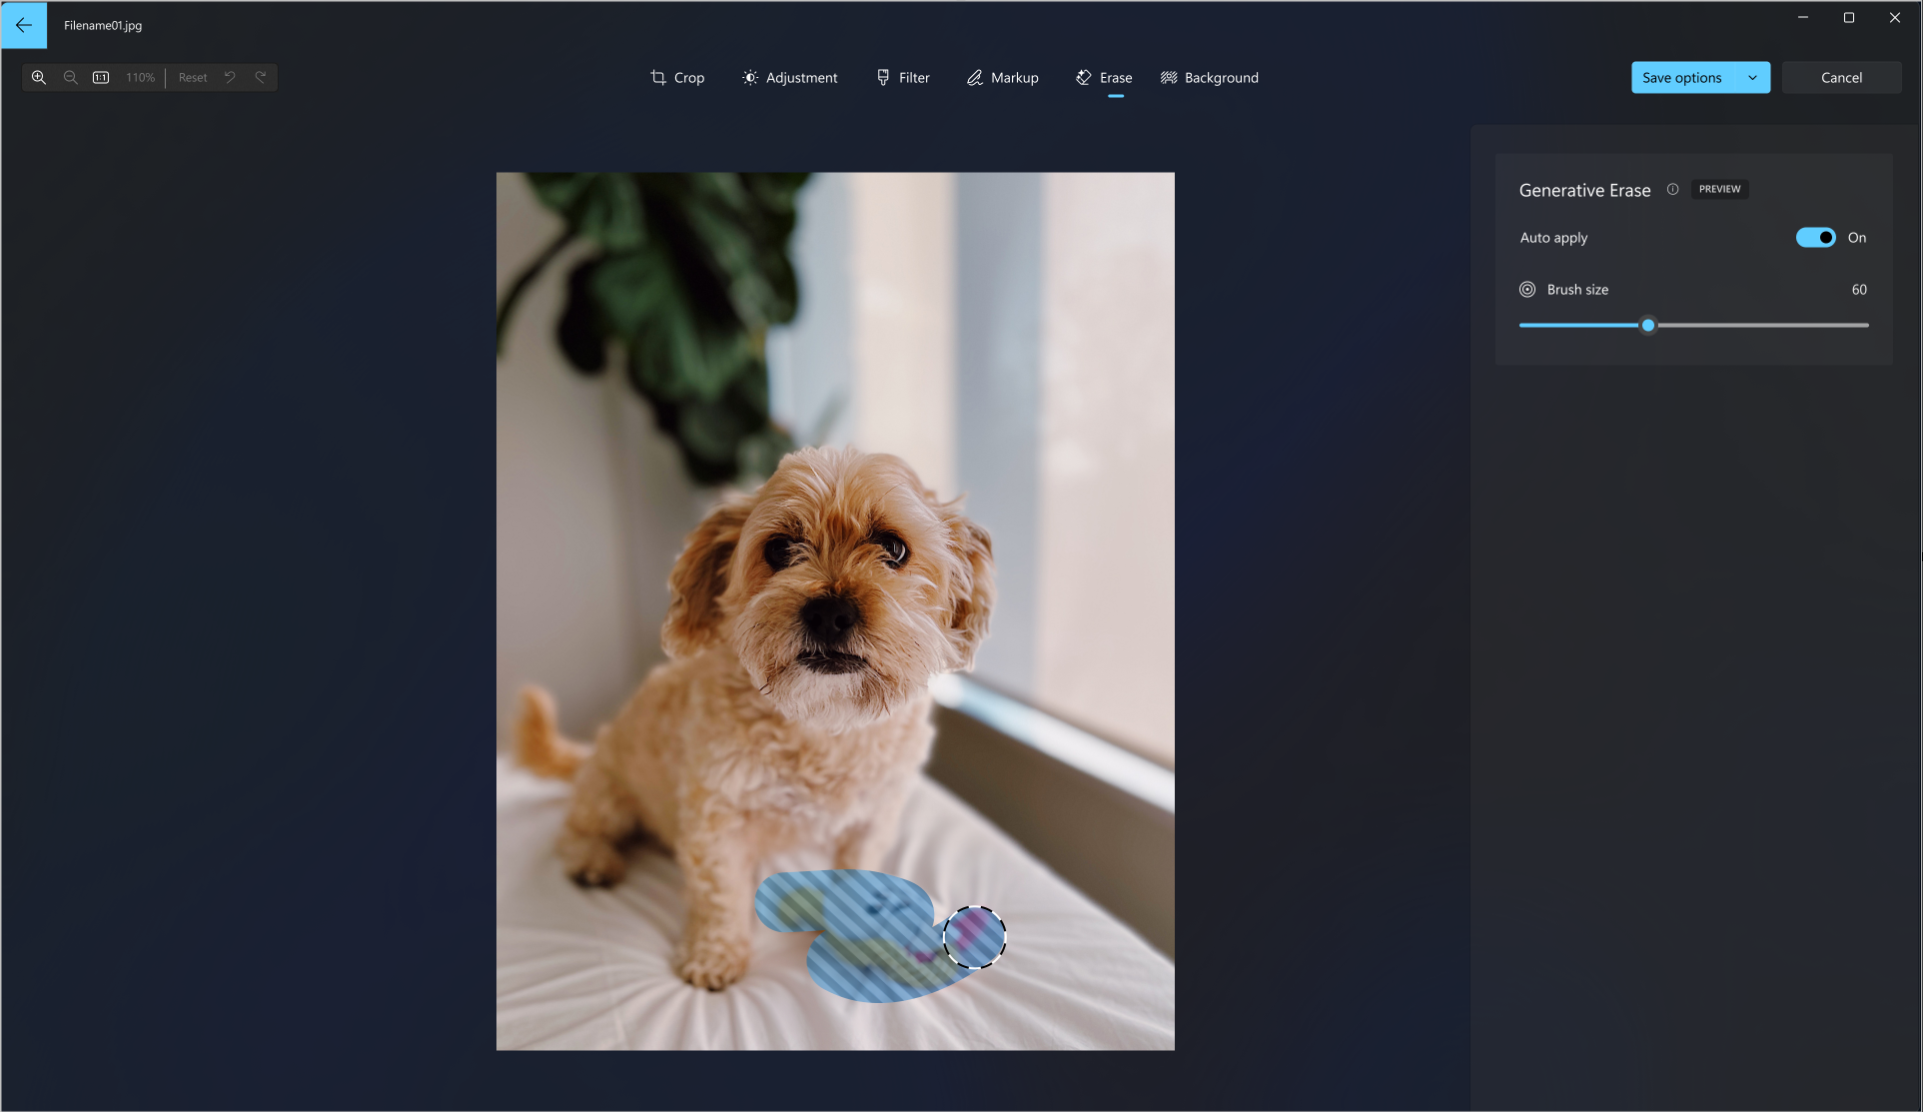 Képernyőkép a kutya fényképén használt generatív radír eszközről, amely törli a kutyajátszmát a képről.